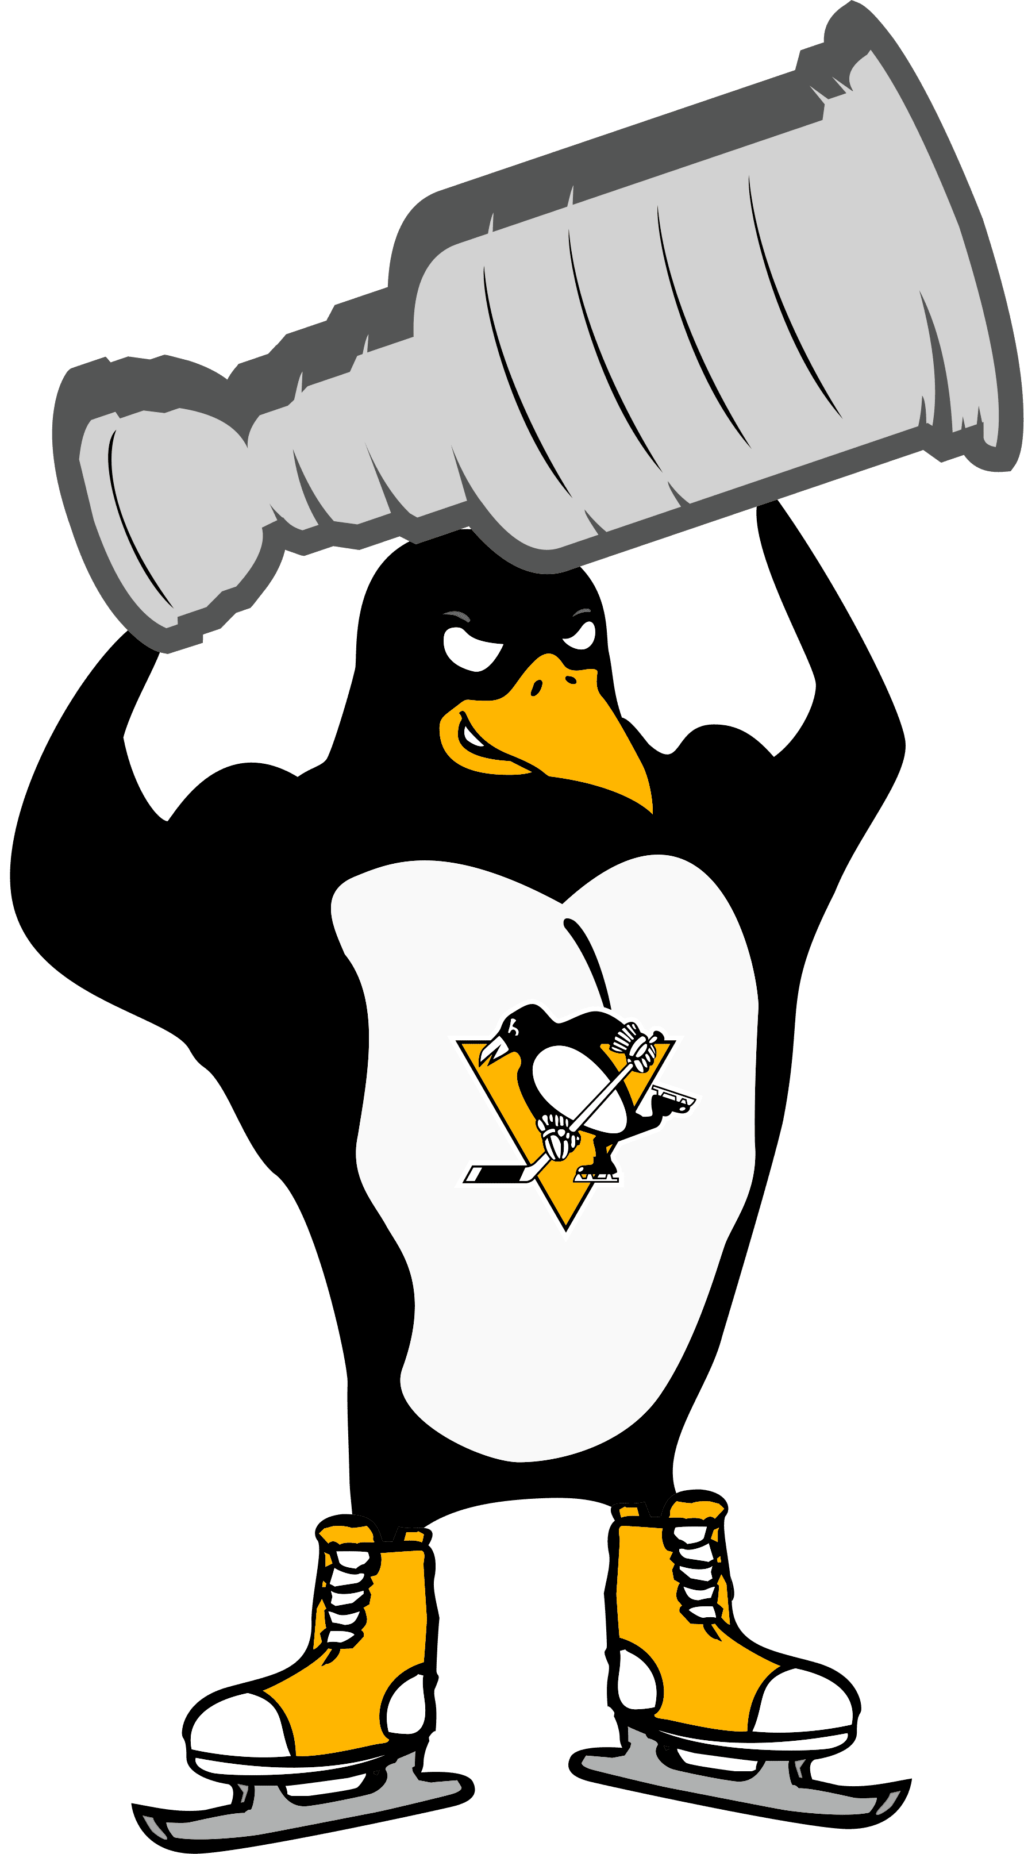 pp 07 NHL Pittsburgh Penguins SVG, SVG Files For Silhouette, Pittsburgh Penguins Files For Cricut, Pittsburgh Penguins SVG, DXF, EPS, PNG Instant Download. Pittsburgh Penguins SVG, SVG Files For Silhouette, Pittsburgh Penguins Files For Cricut, Pittsburgh Penguins SVG, DXF, EPS, PNG Instant Download.